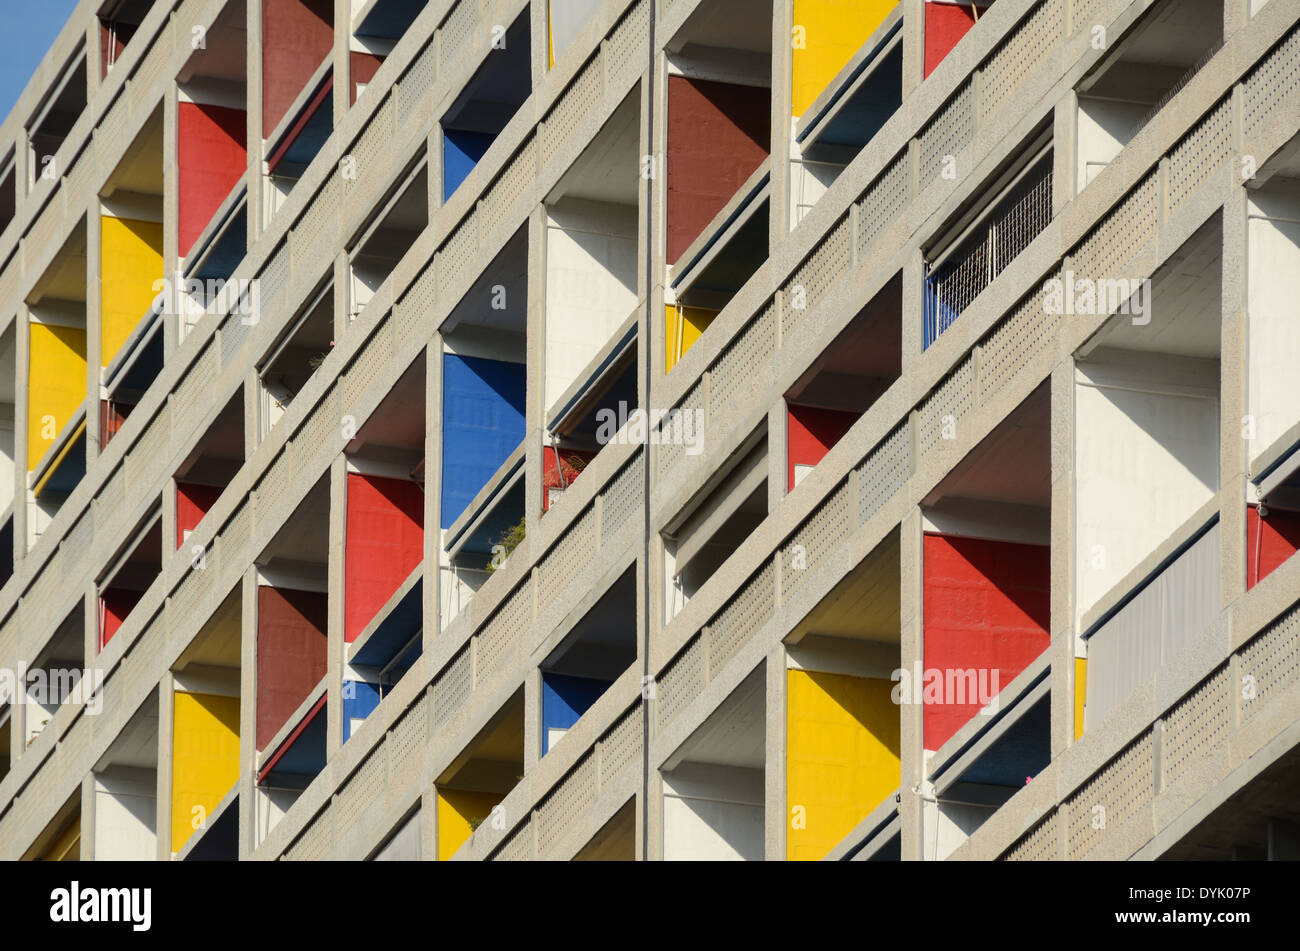 Balcons colorés peints dans des couleurs primaires de la Cité Radieuse ou unité d'habitation Le Corbusier Marseille ou Marseille France Banque D'Images